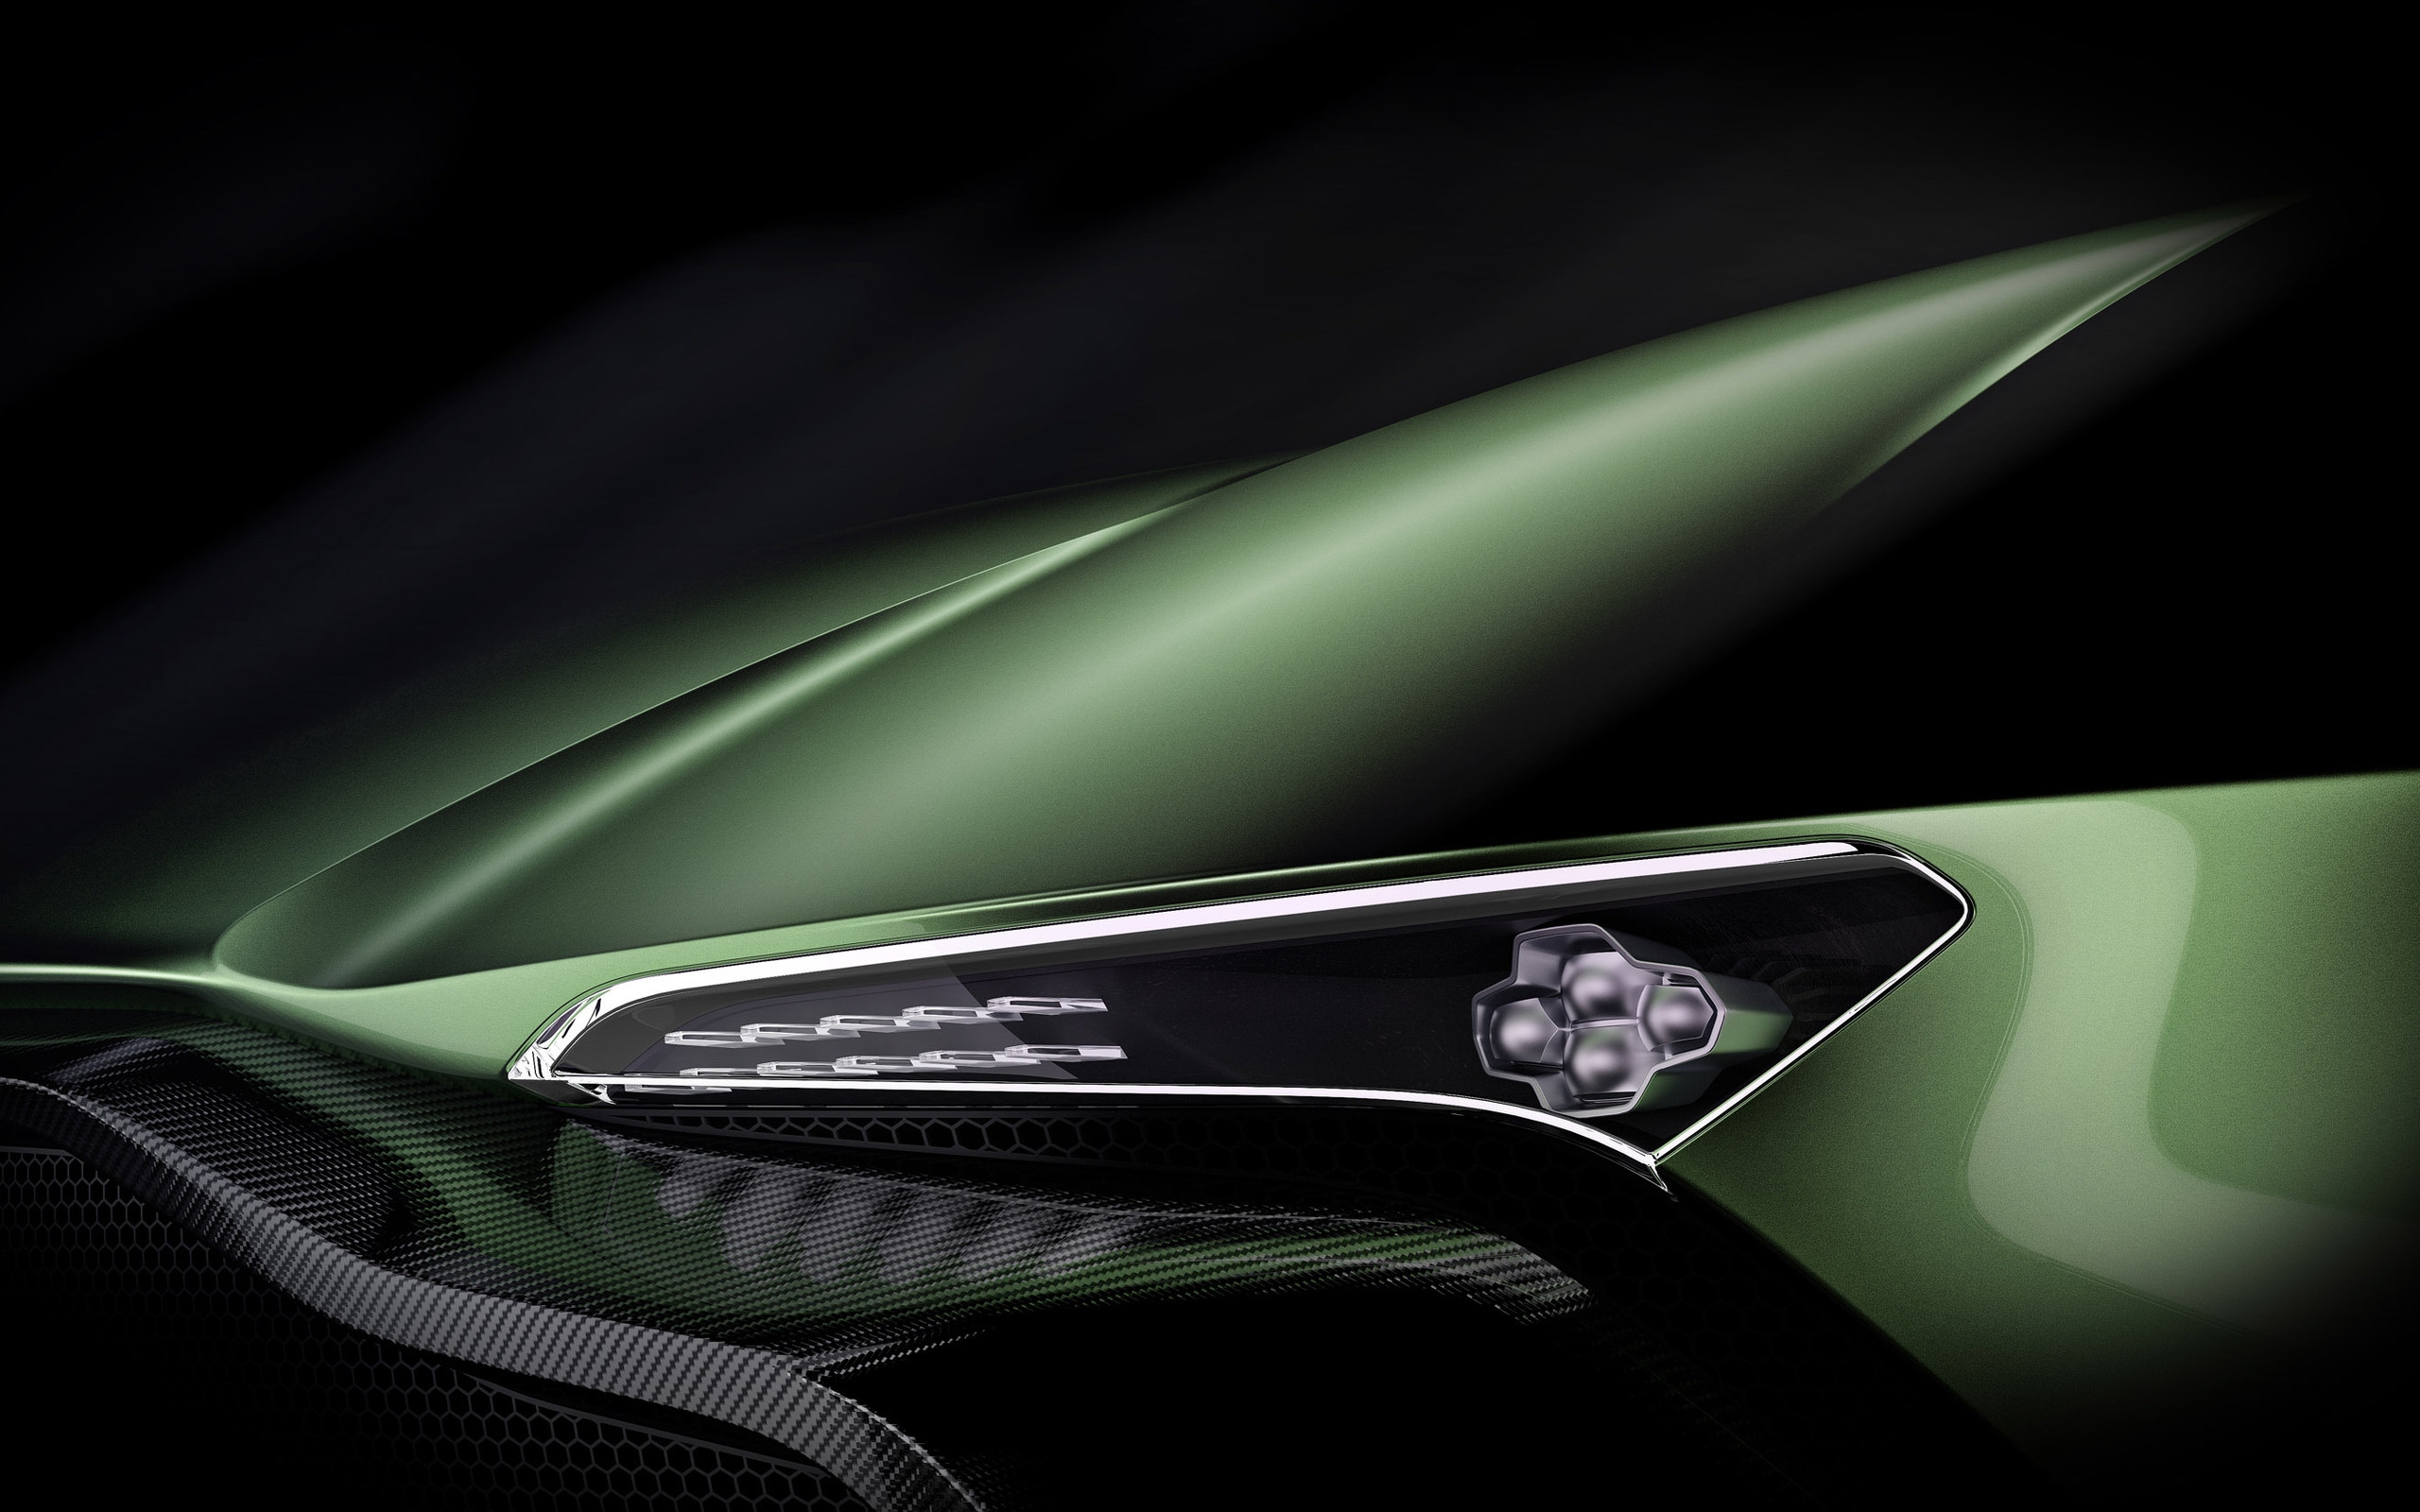 Aston Martin Vulcan Headlight for 2560 x 1600 widescreen resolution